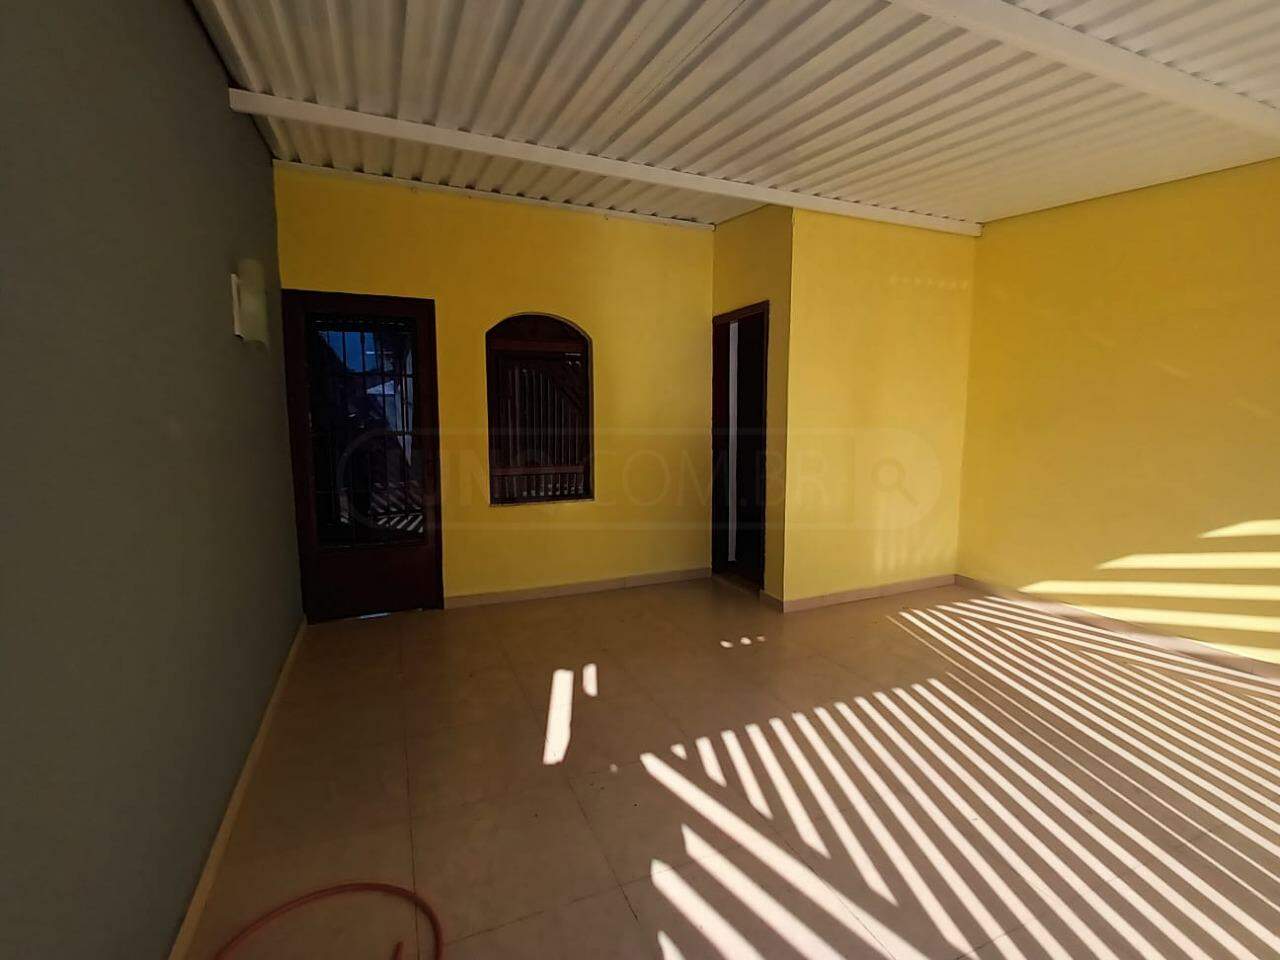 Casa à venda, 2 quartos, 2 vagas, no bairro Vila Bessy em Piracicaba - SP